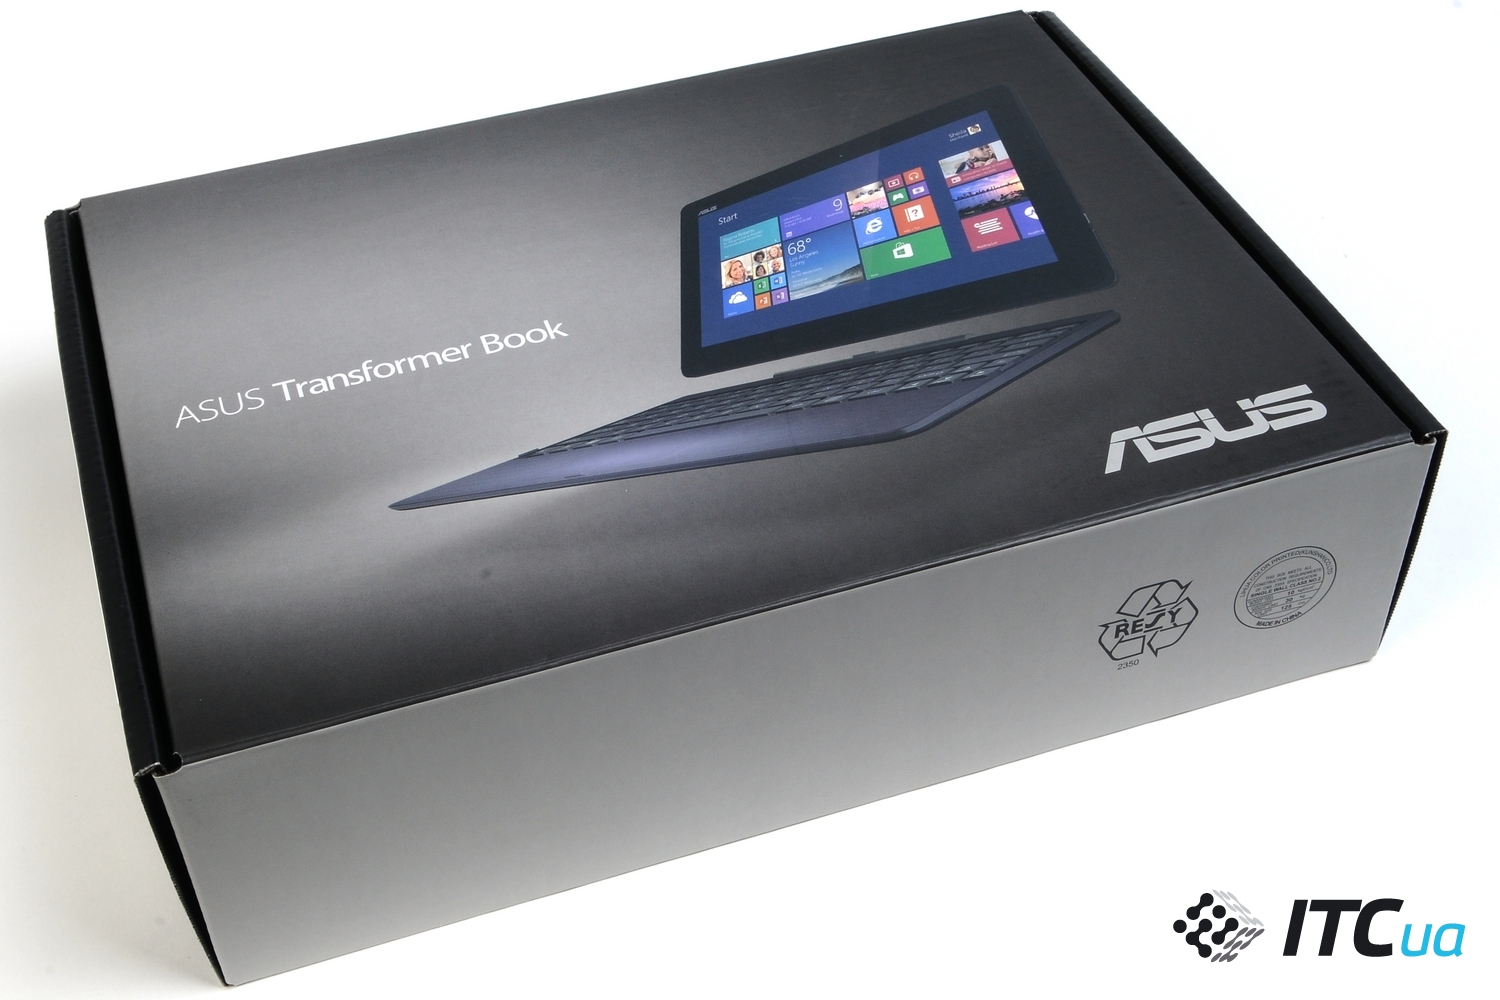 Купить Ноутбук Asus Transformer Book T100ta